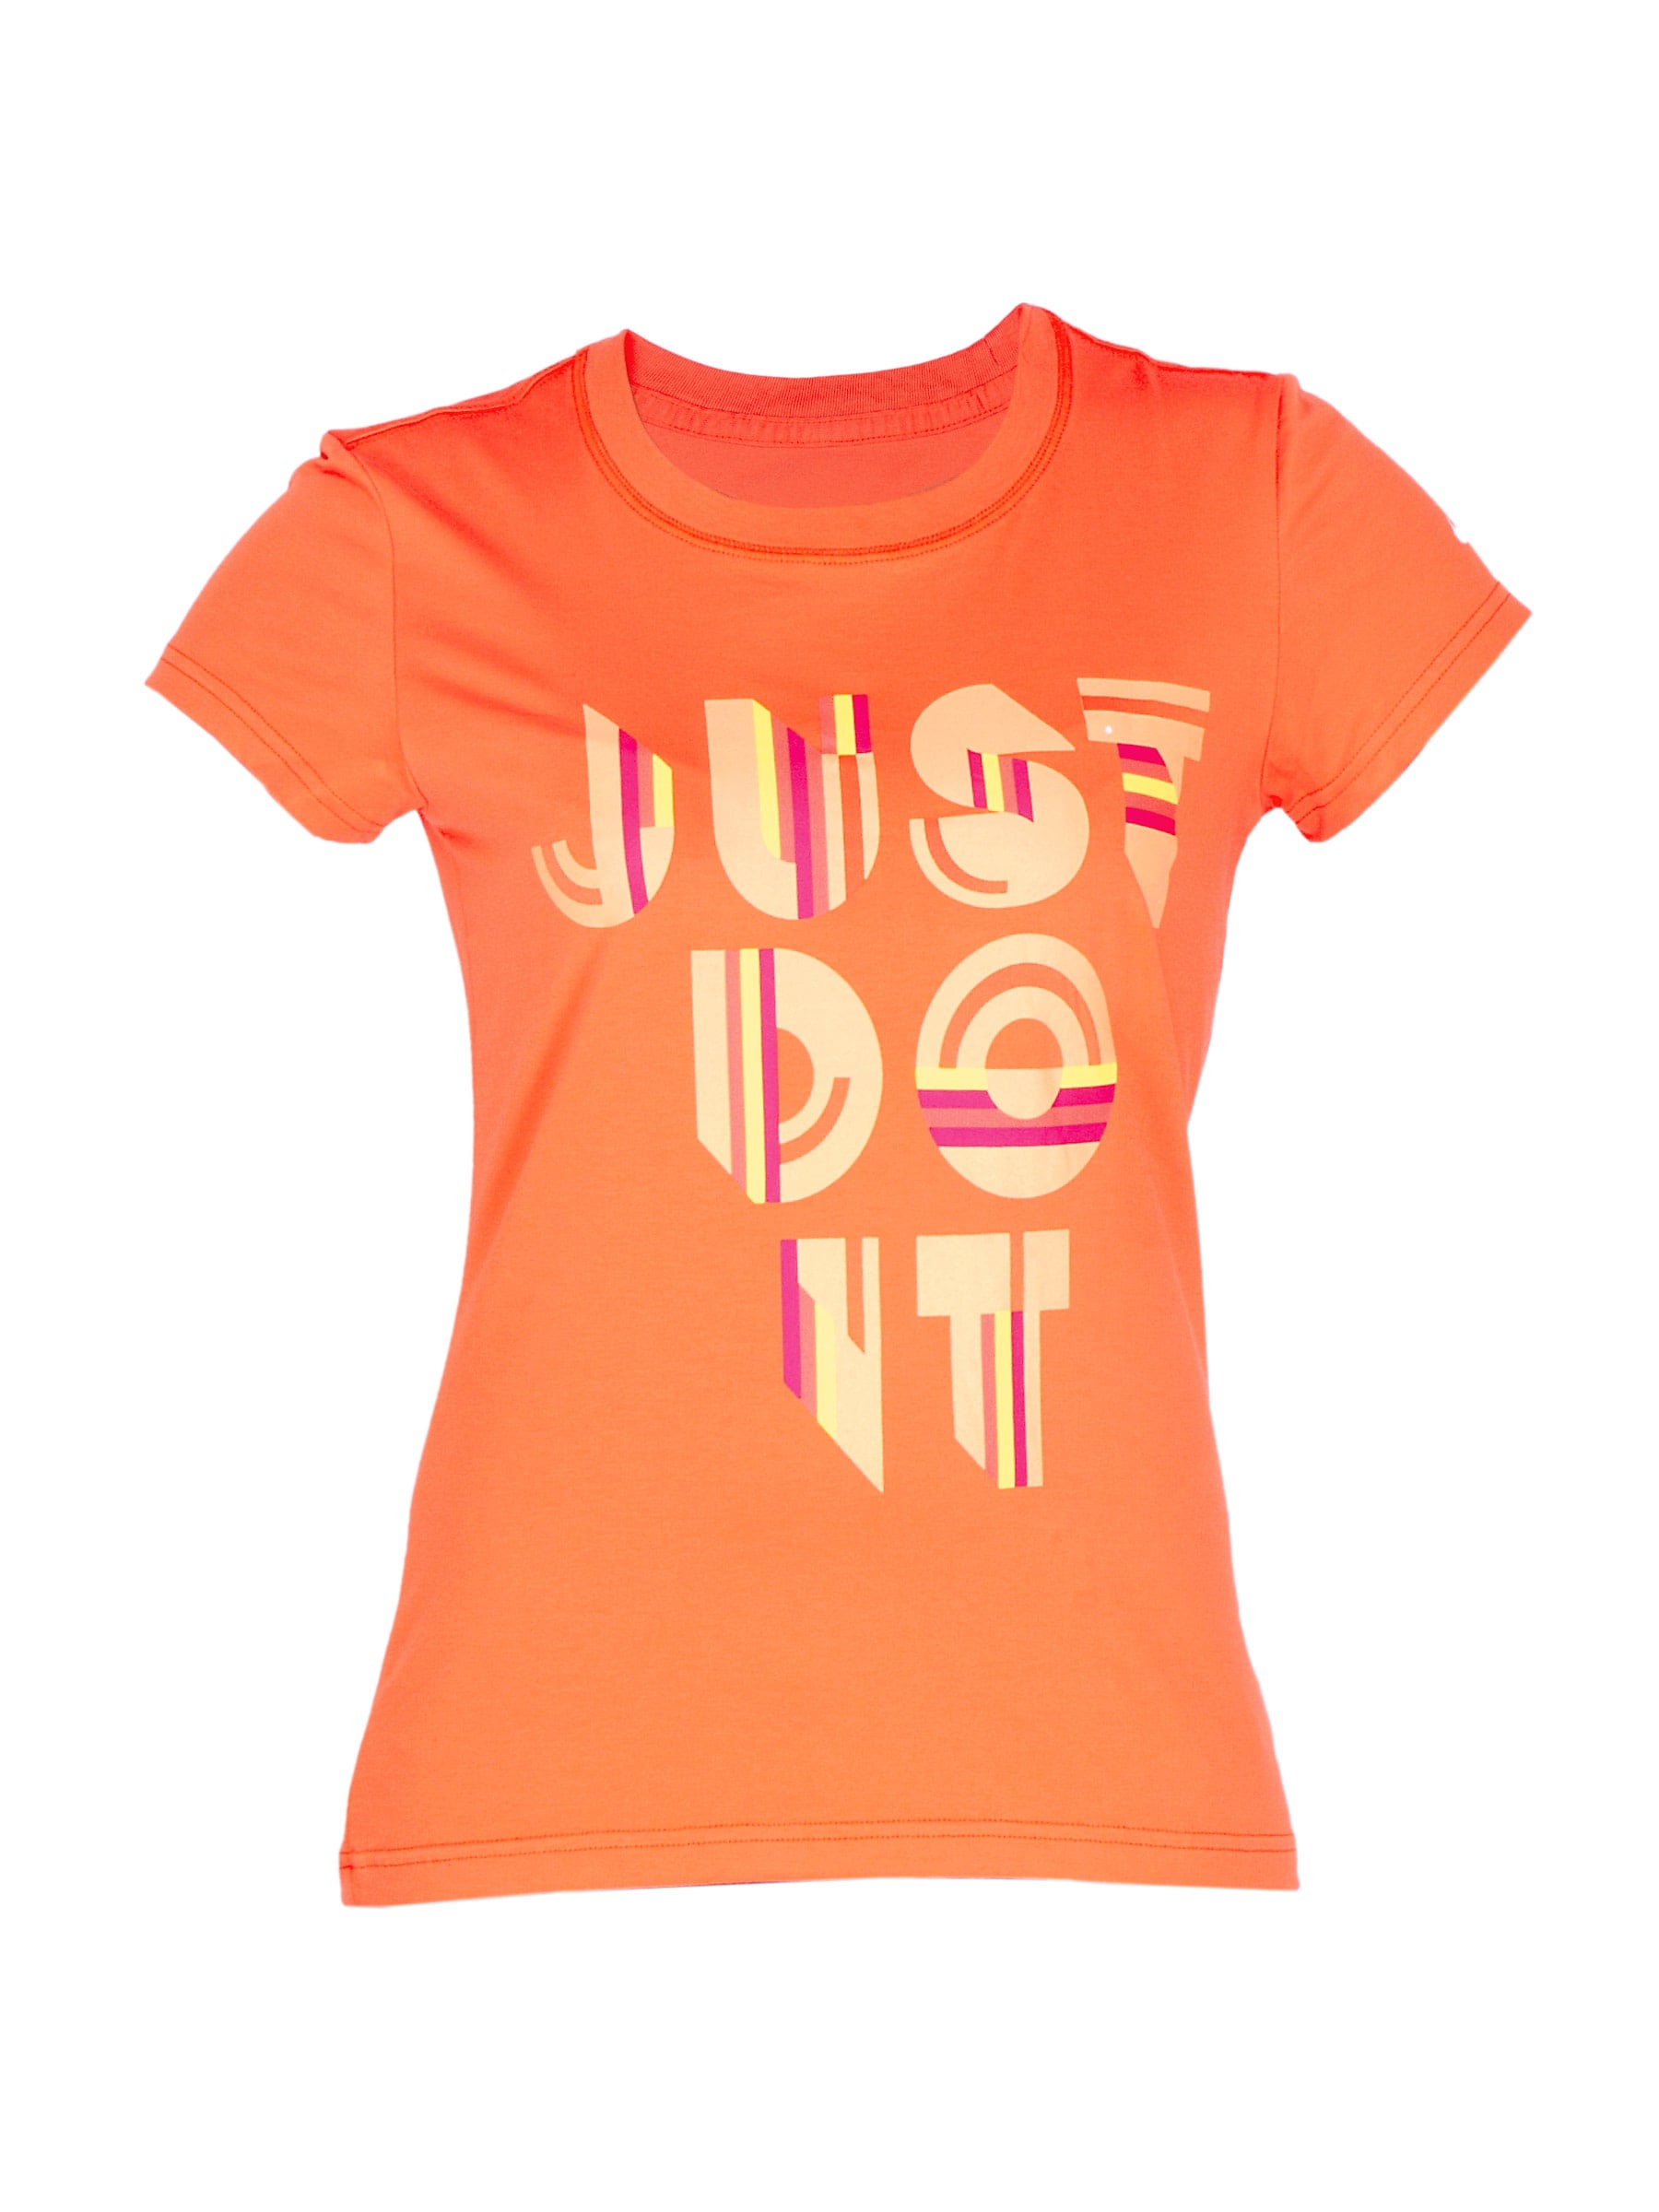 Nike Women Trainng short sleeve tshirt Orange Tshirts